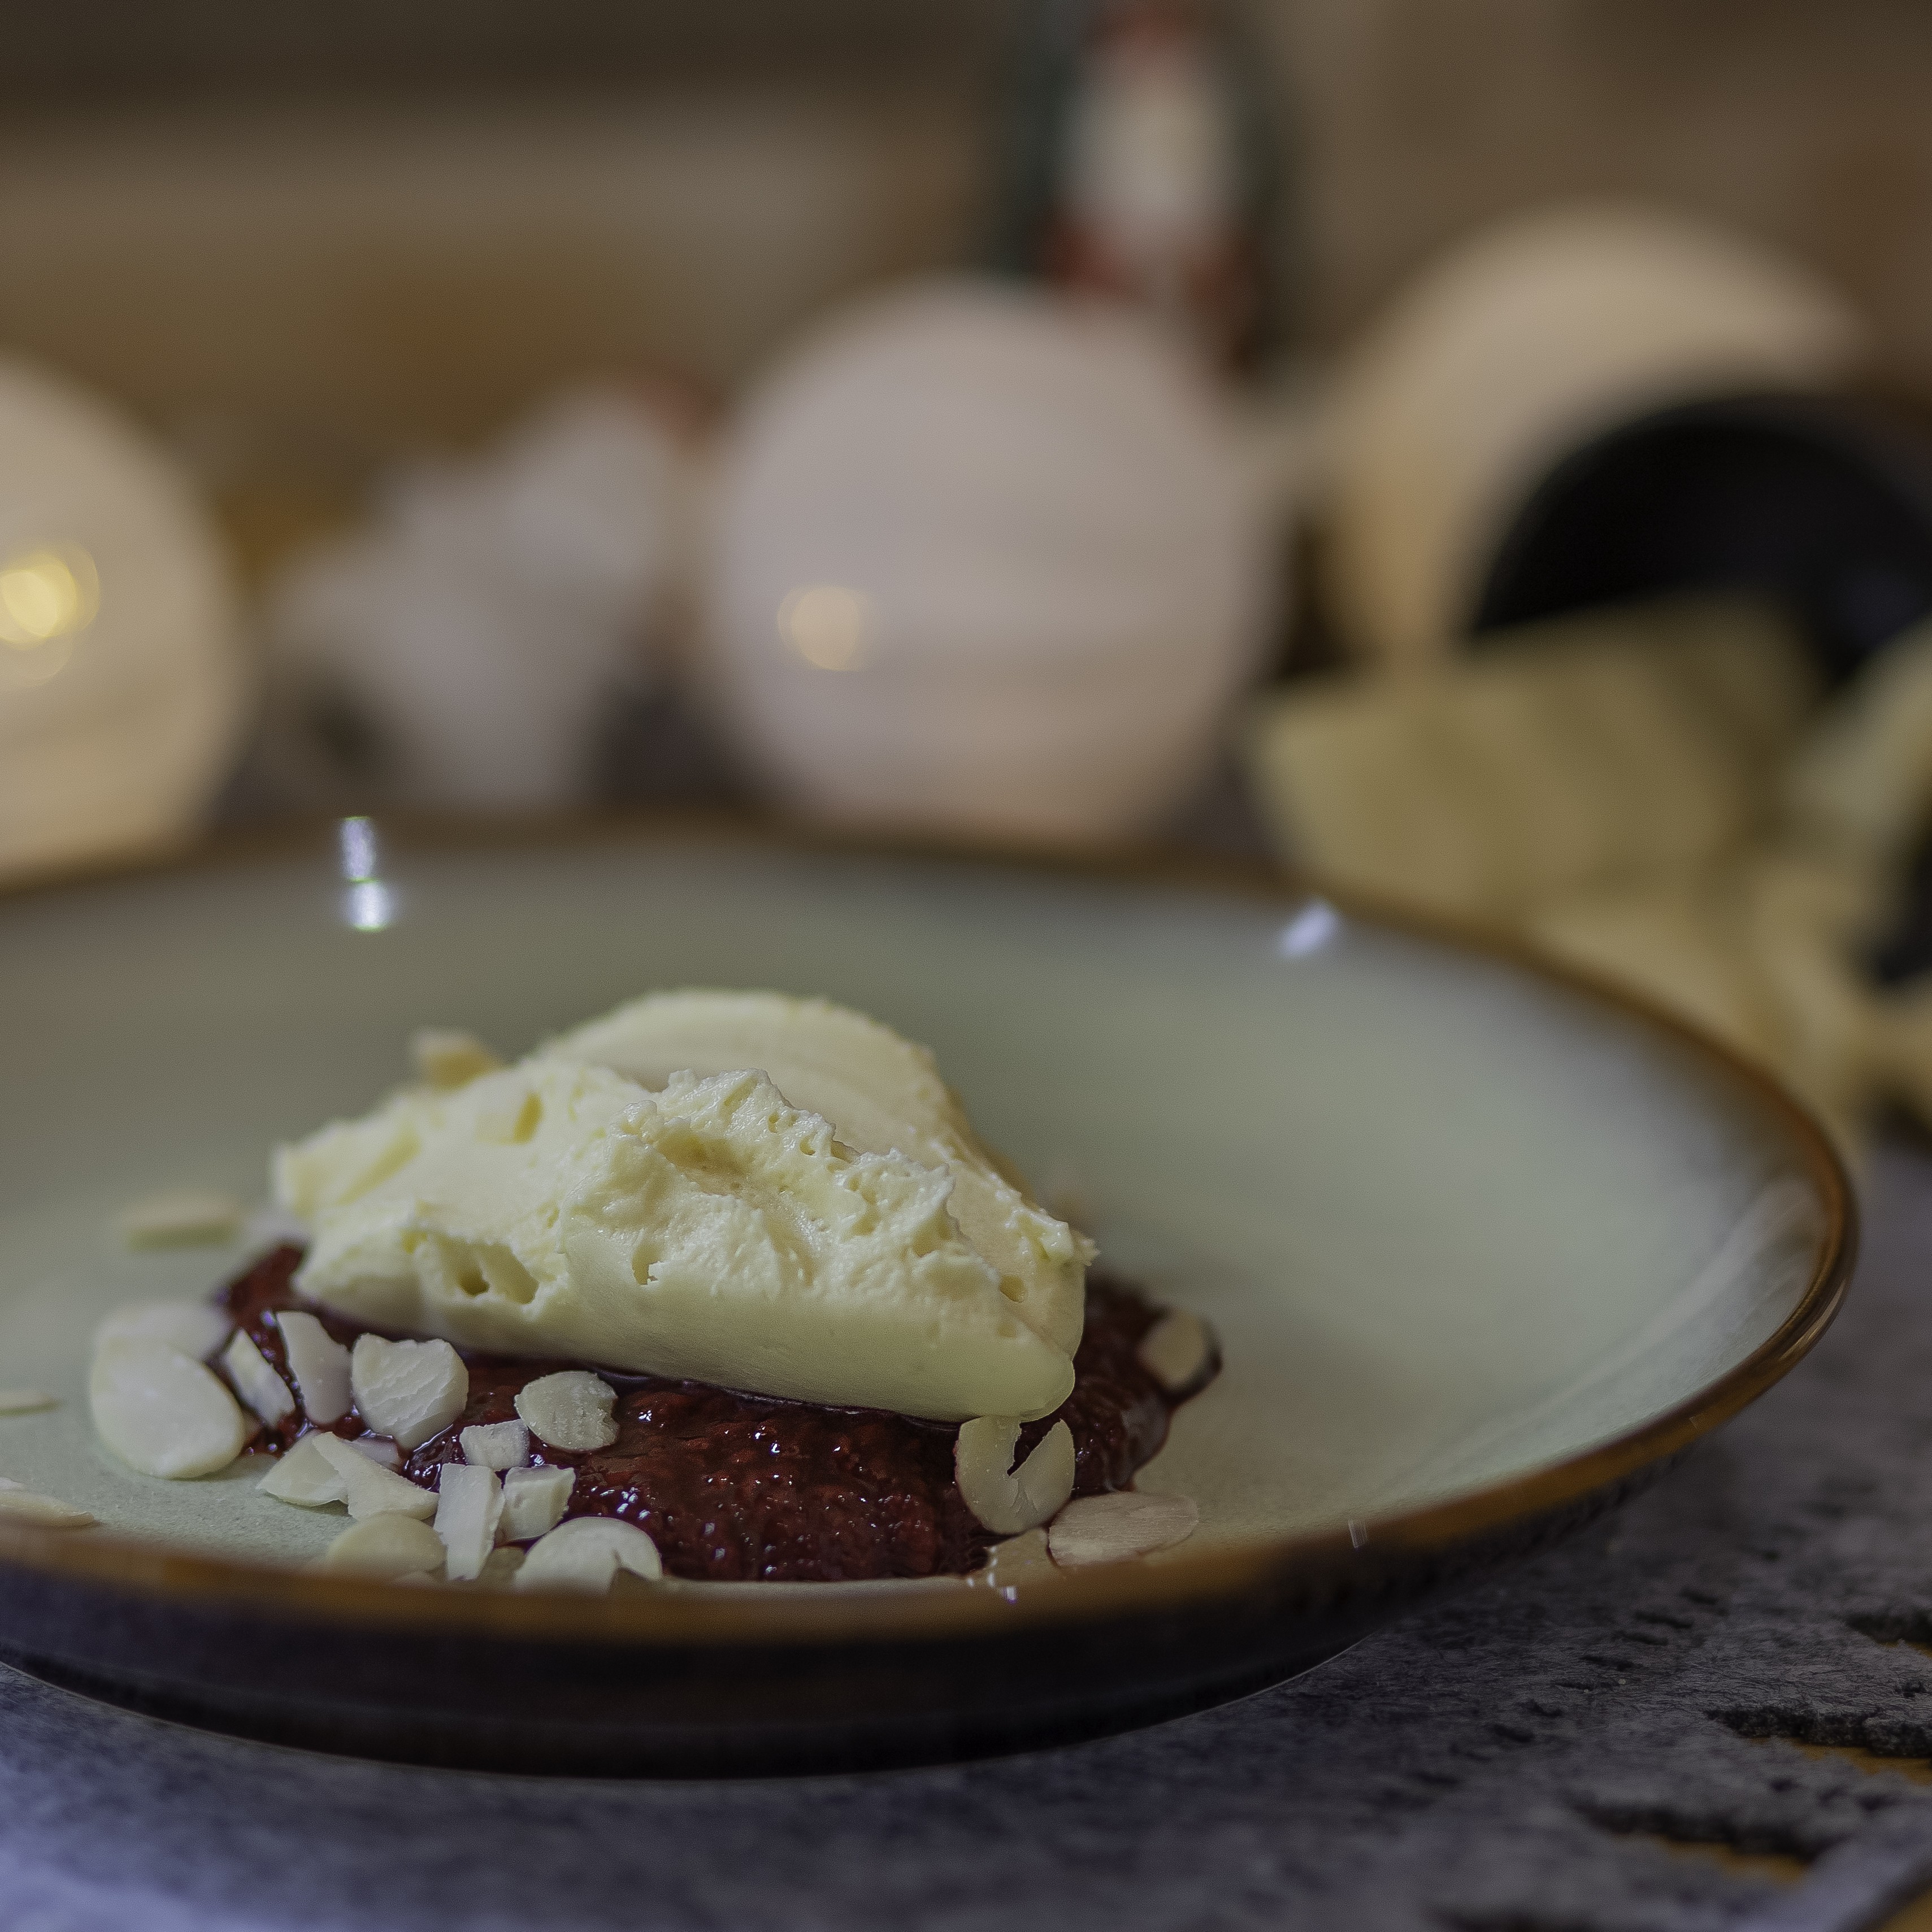 Mousse de chocolate branco com calda de frutas vermelhas do chef Marcelo Oliva (Foto: Ana Oehler)